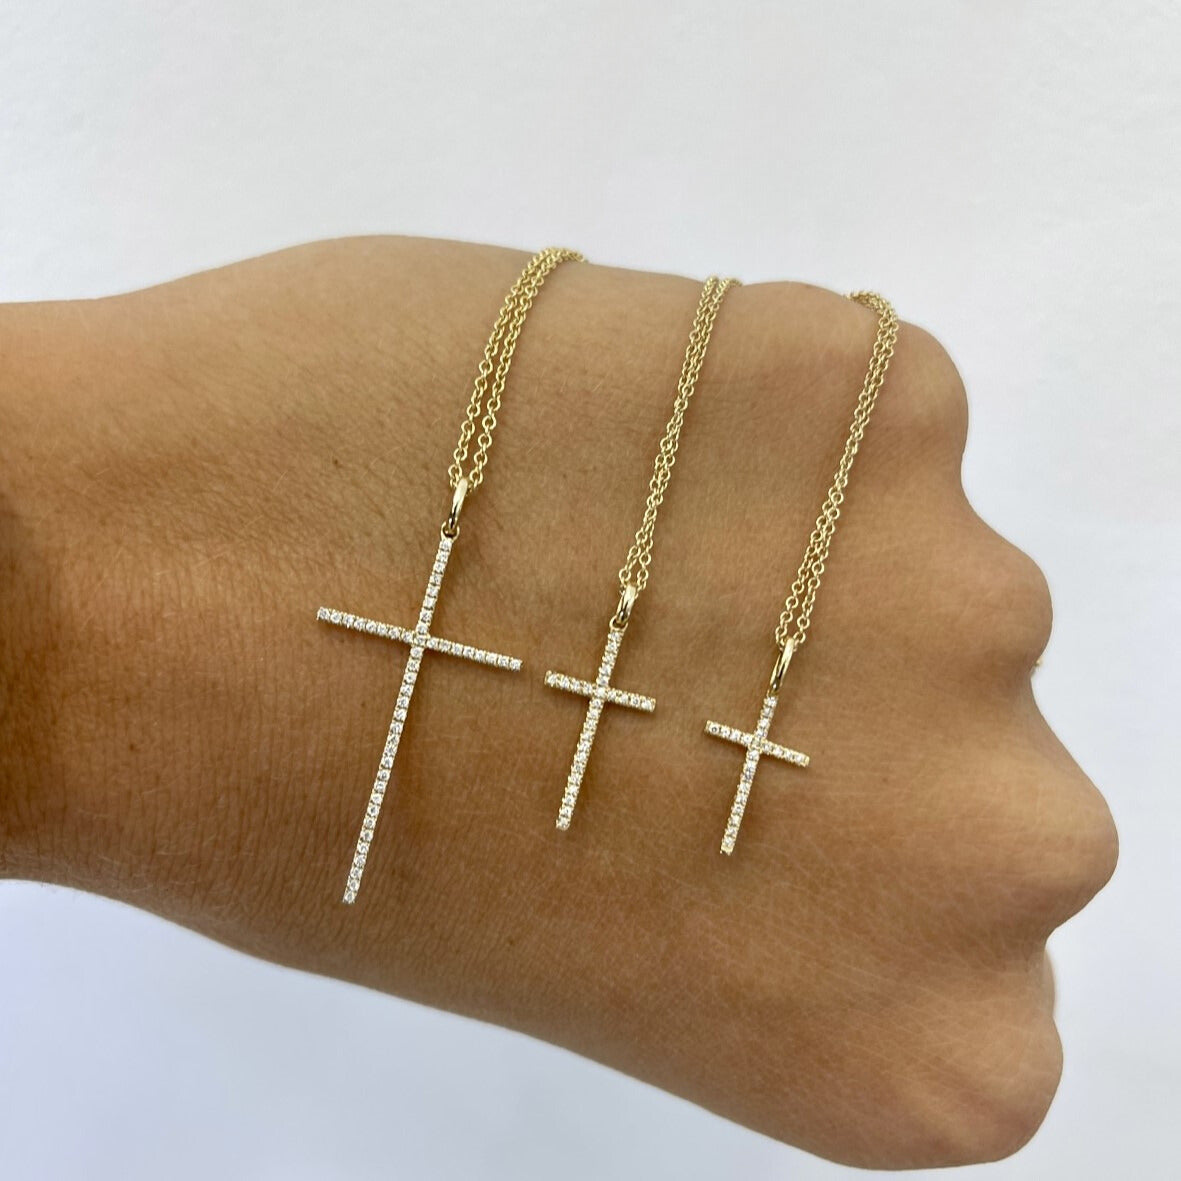 Thin Diamond Cross Necklace - Happy Jewelers Fine Jewelry Lifetime Warranty